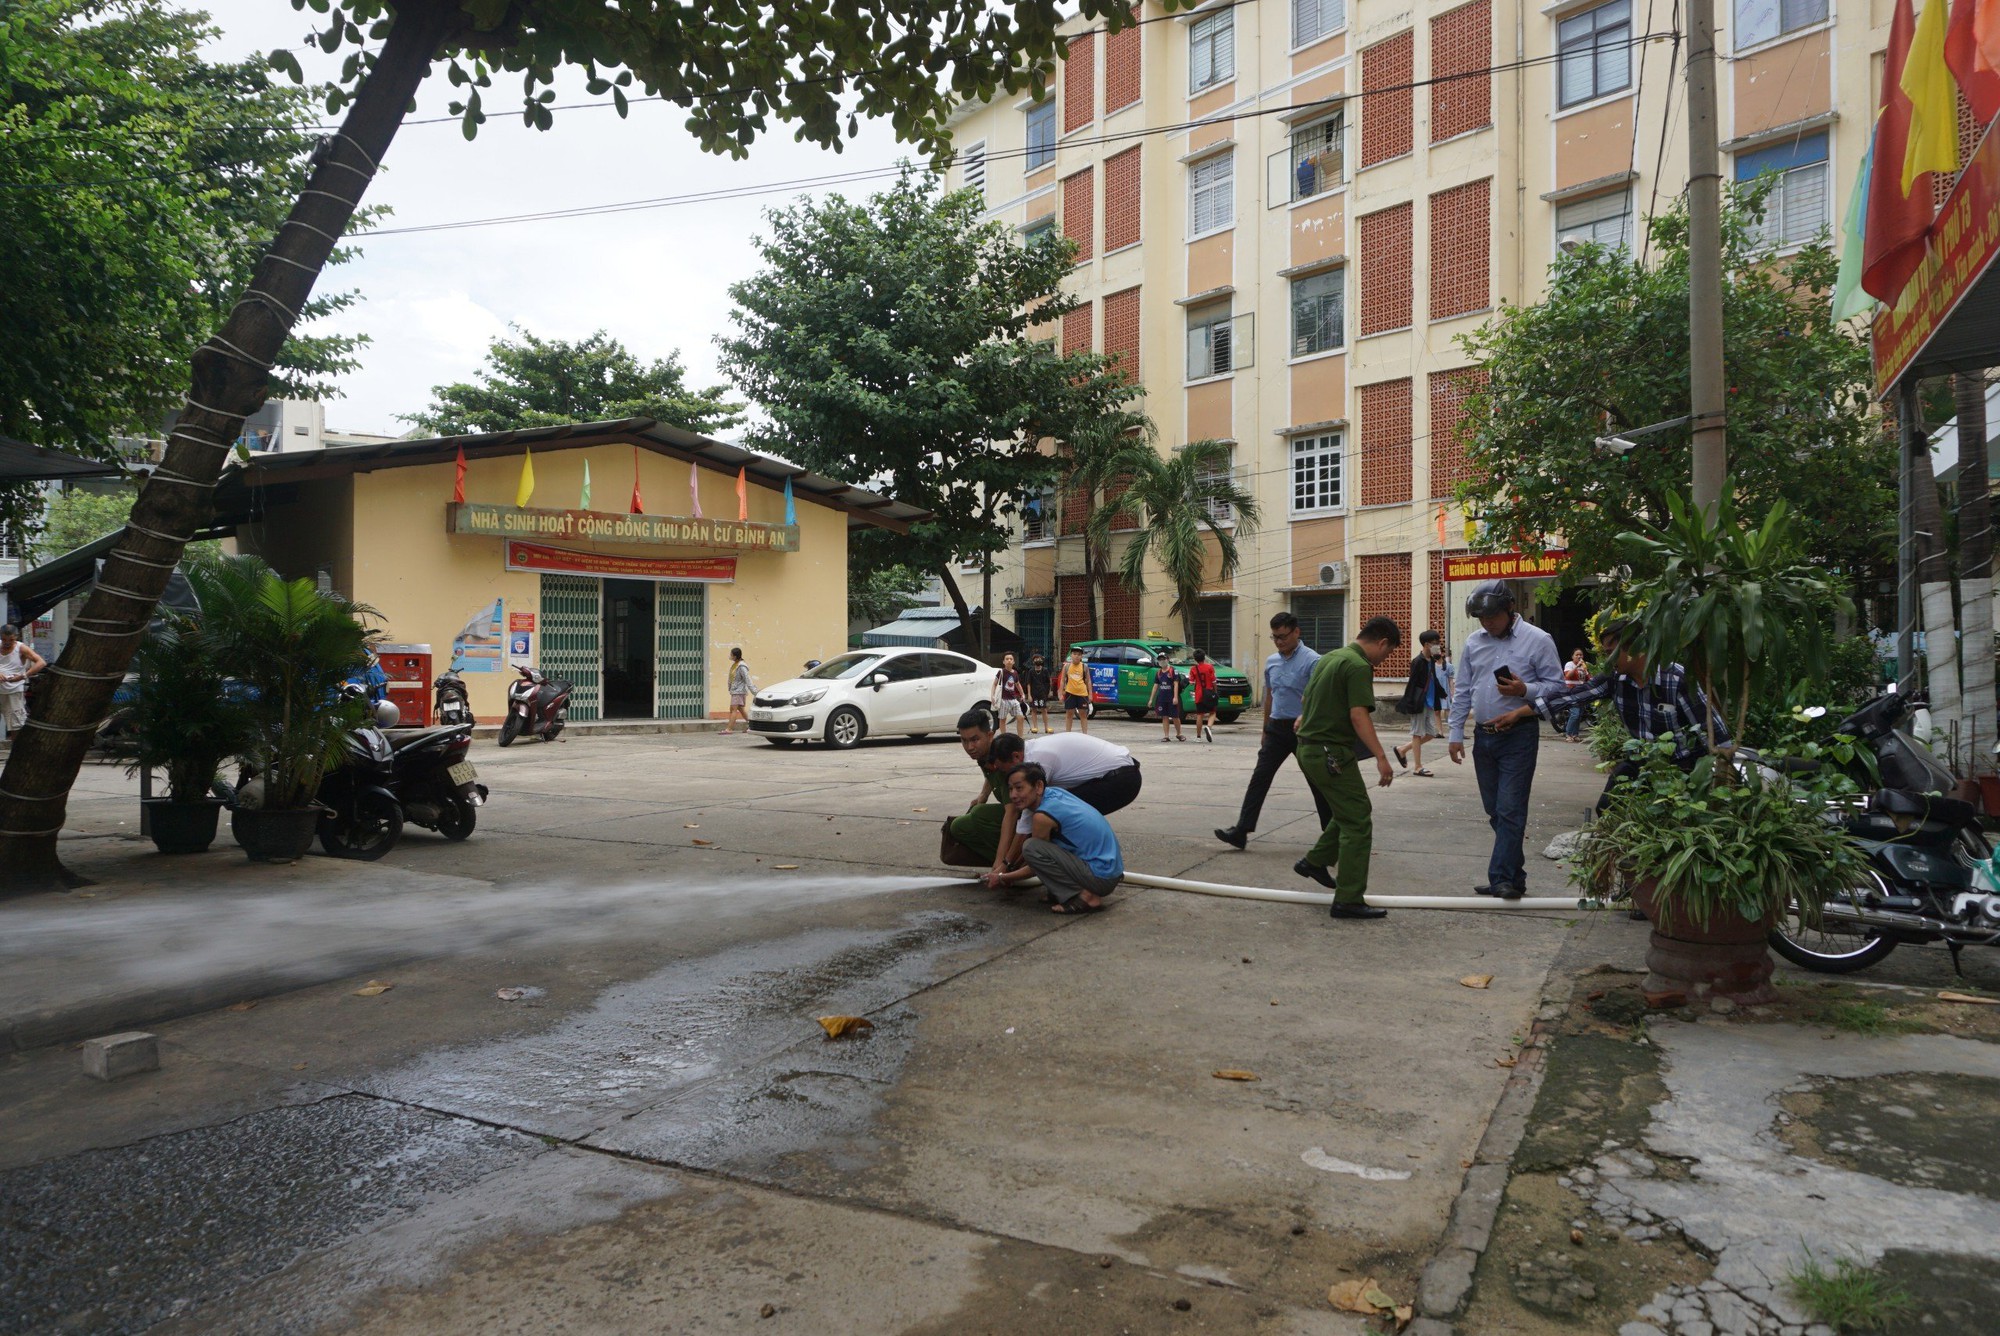 Kiểm tra PCCC của hàng ngàn chung cư, nhà trọ tại Đà Nẵng - Ảnh 3.